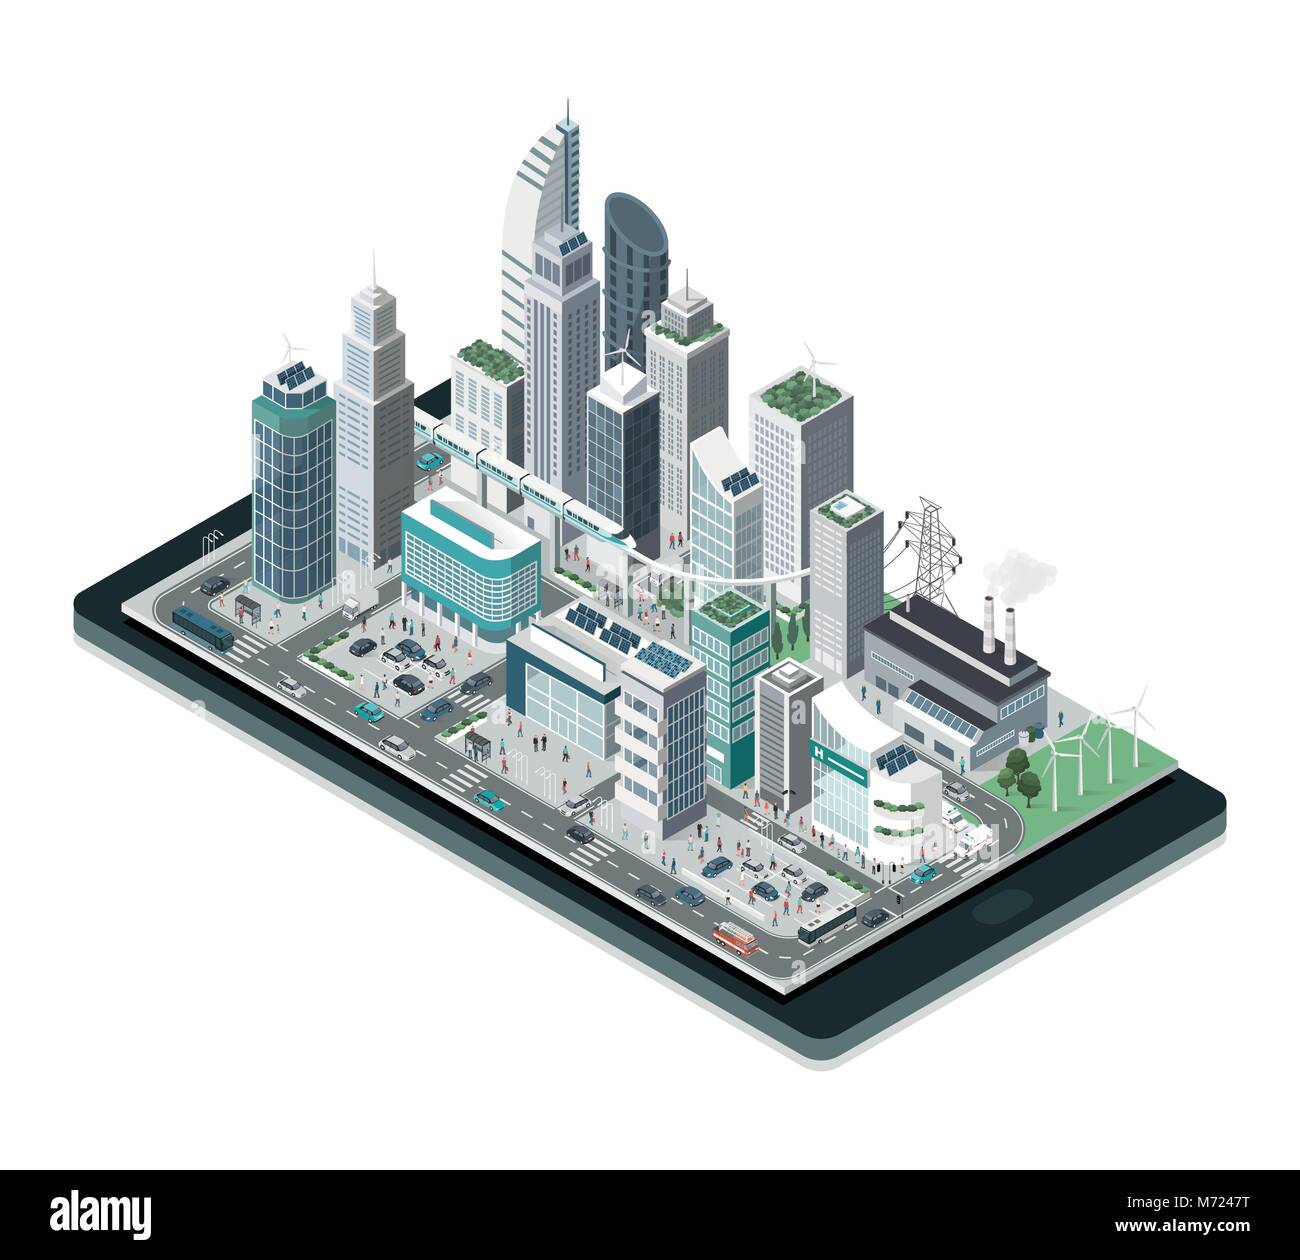 Smart city, realtà aumentata e tecnologia il concetto: la metropoli con grattacieli e persone su uno smartphone Illustrazione Vettoriale